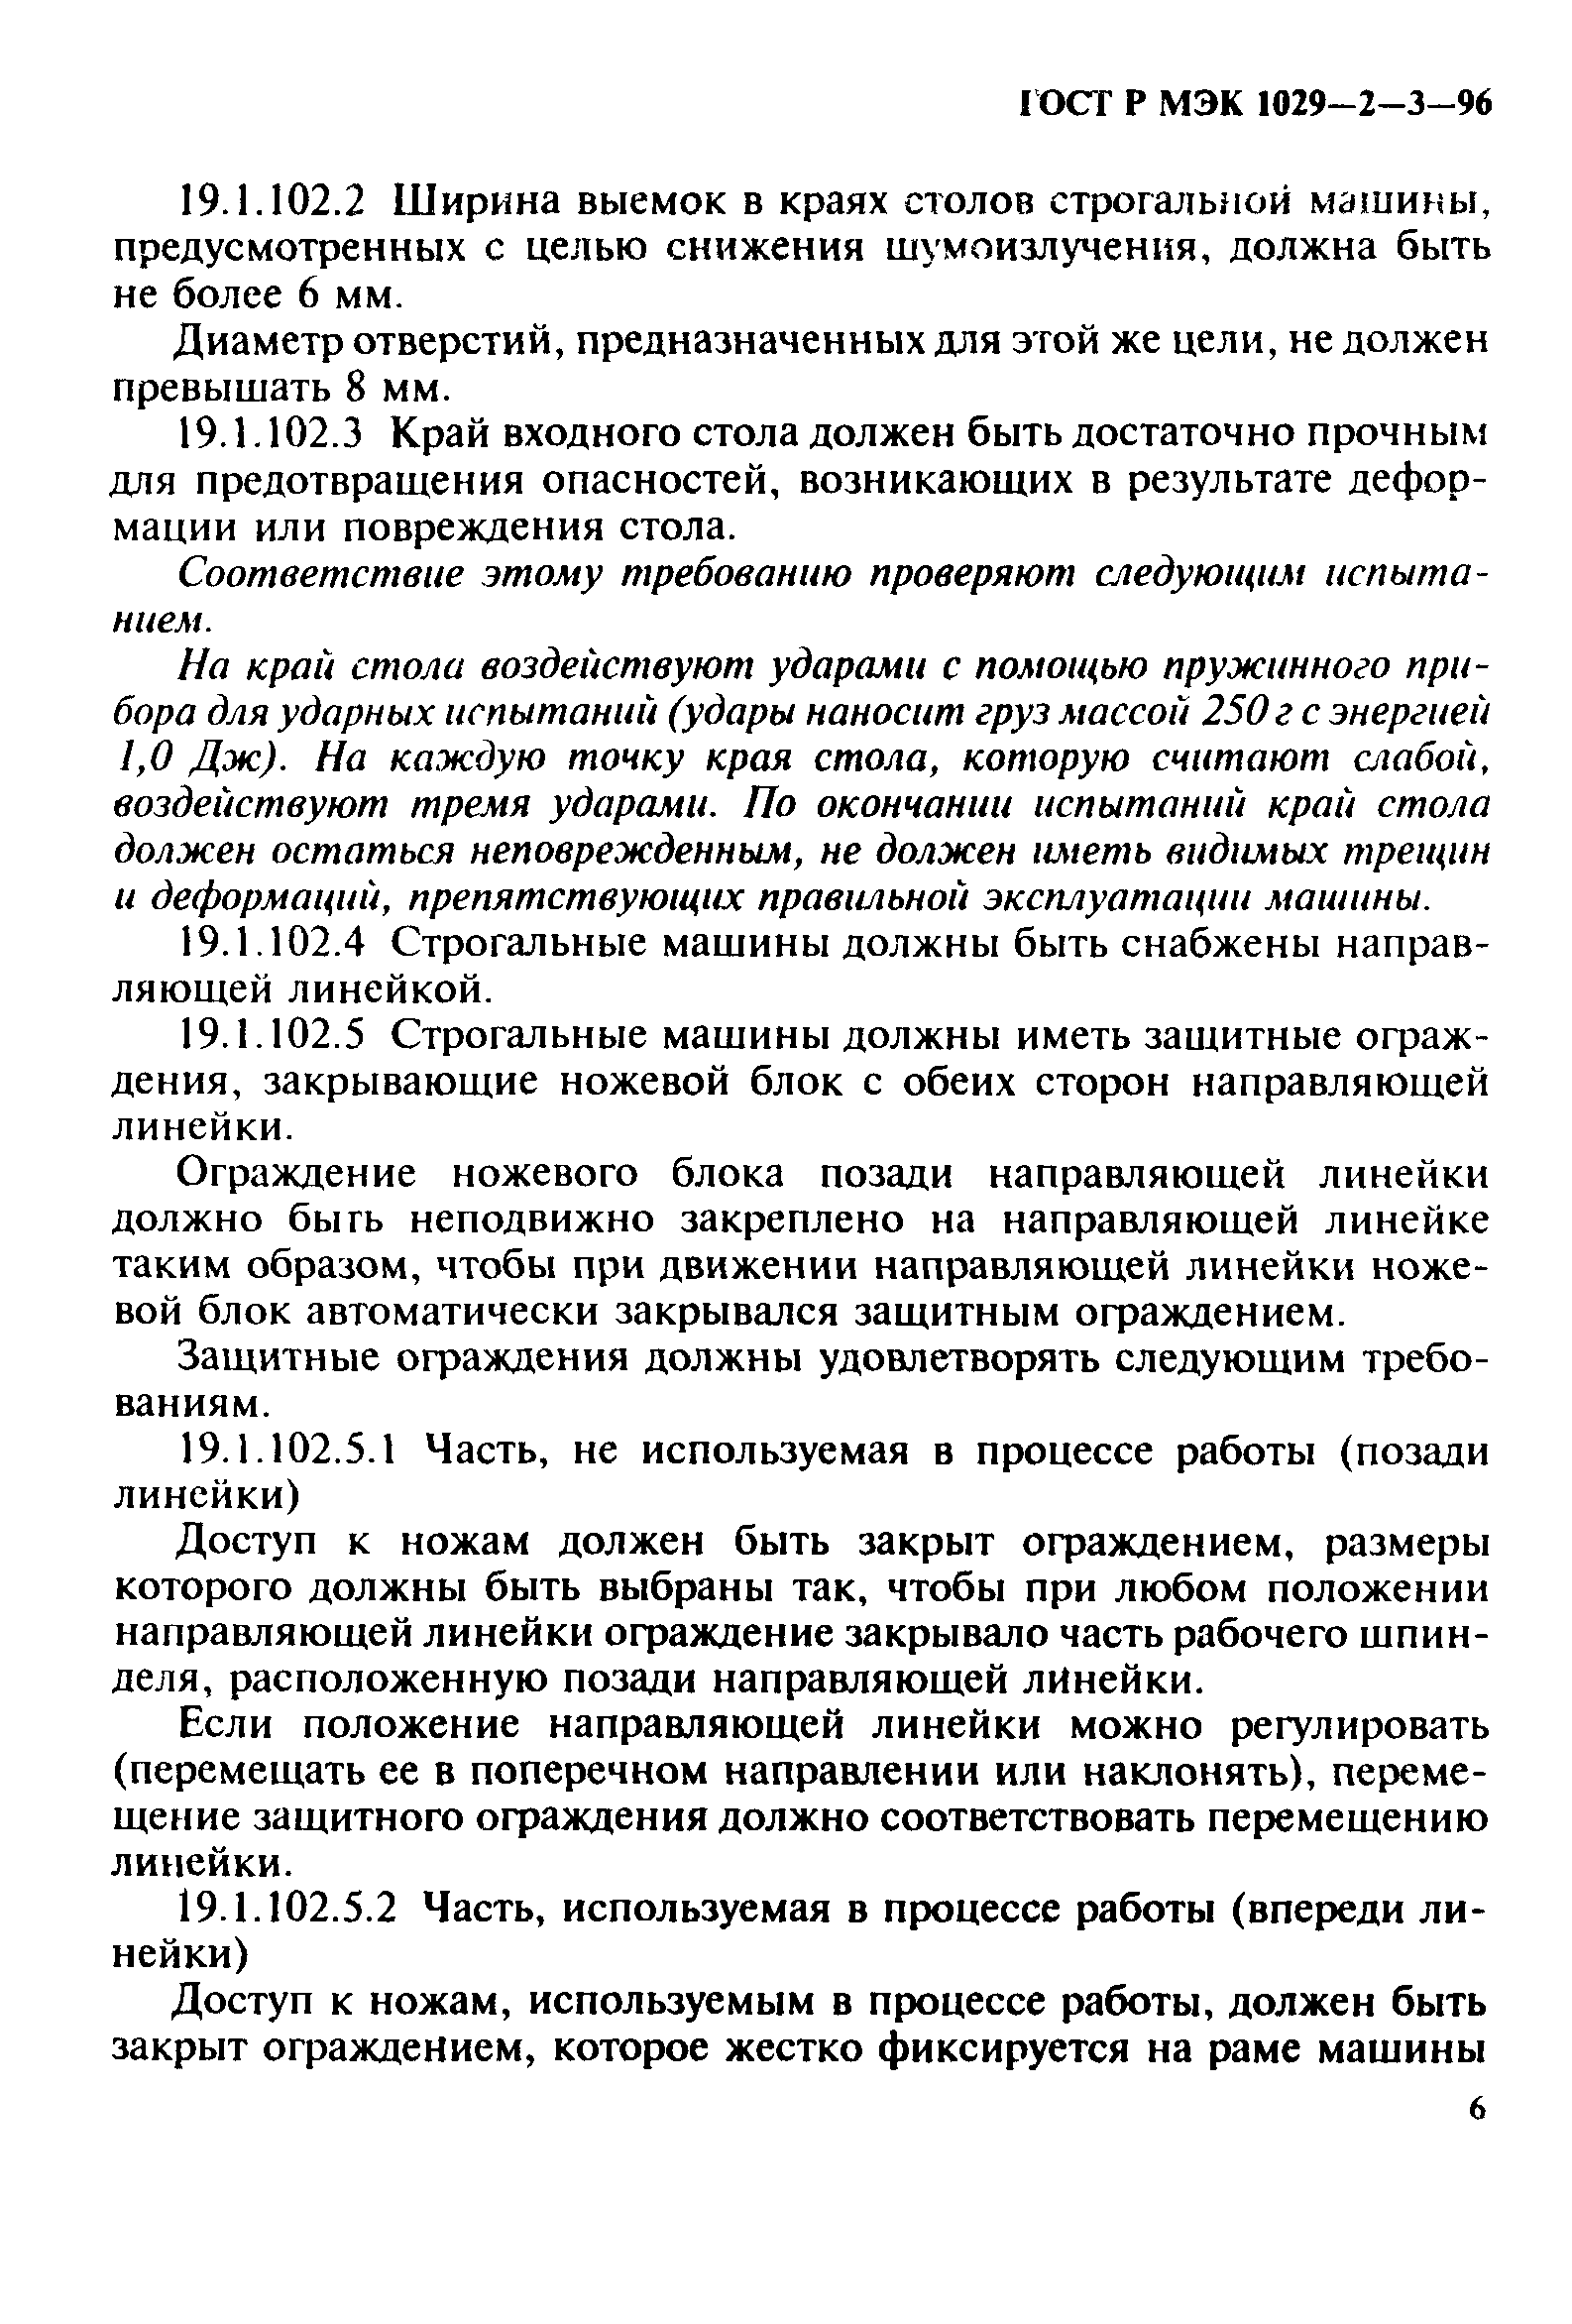 ГОСТ Р МЭК 1029-2-3-96